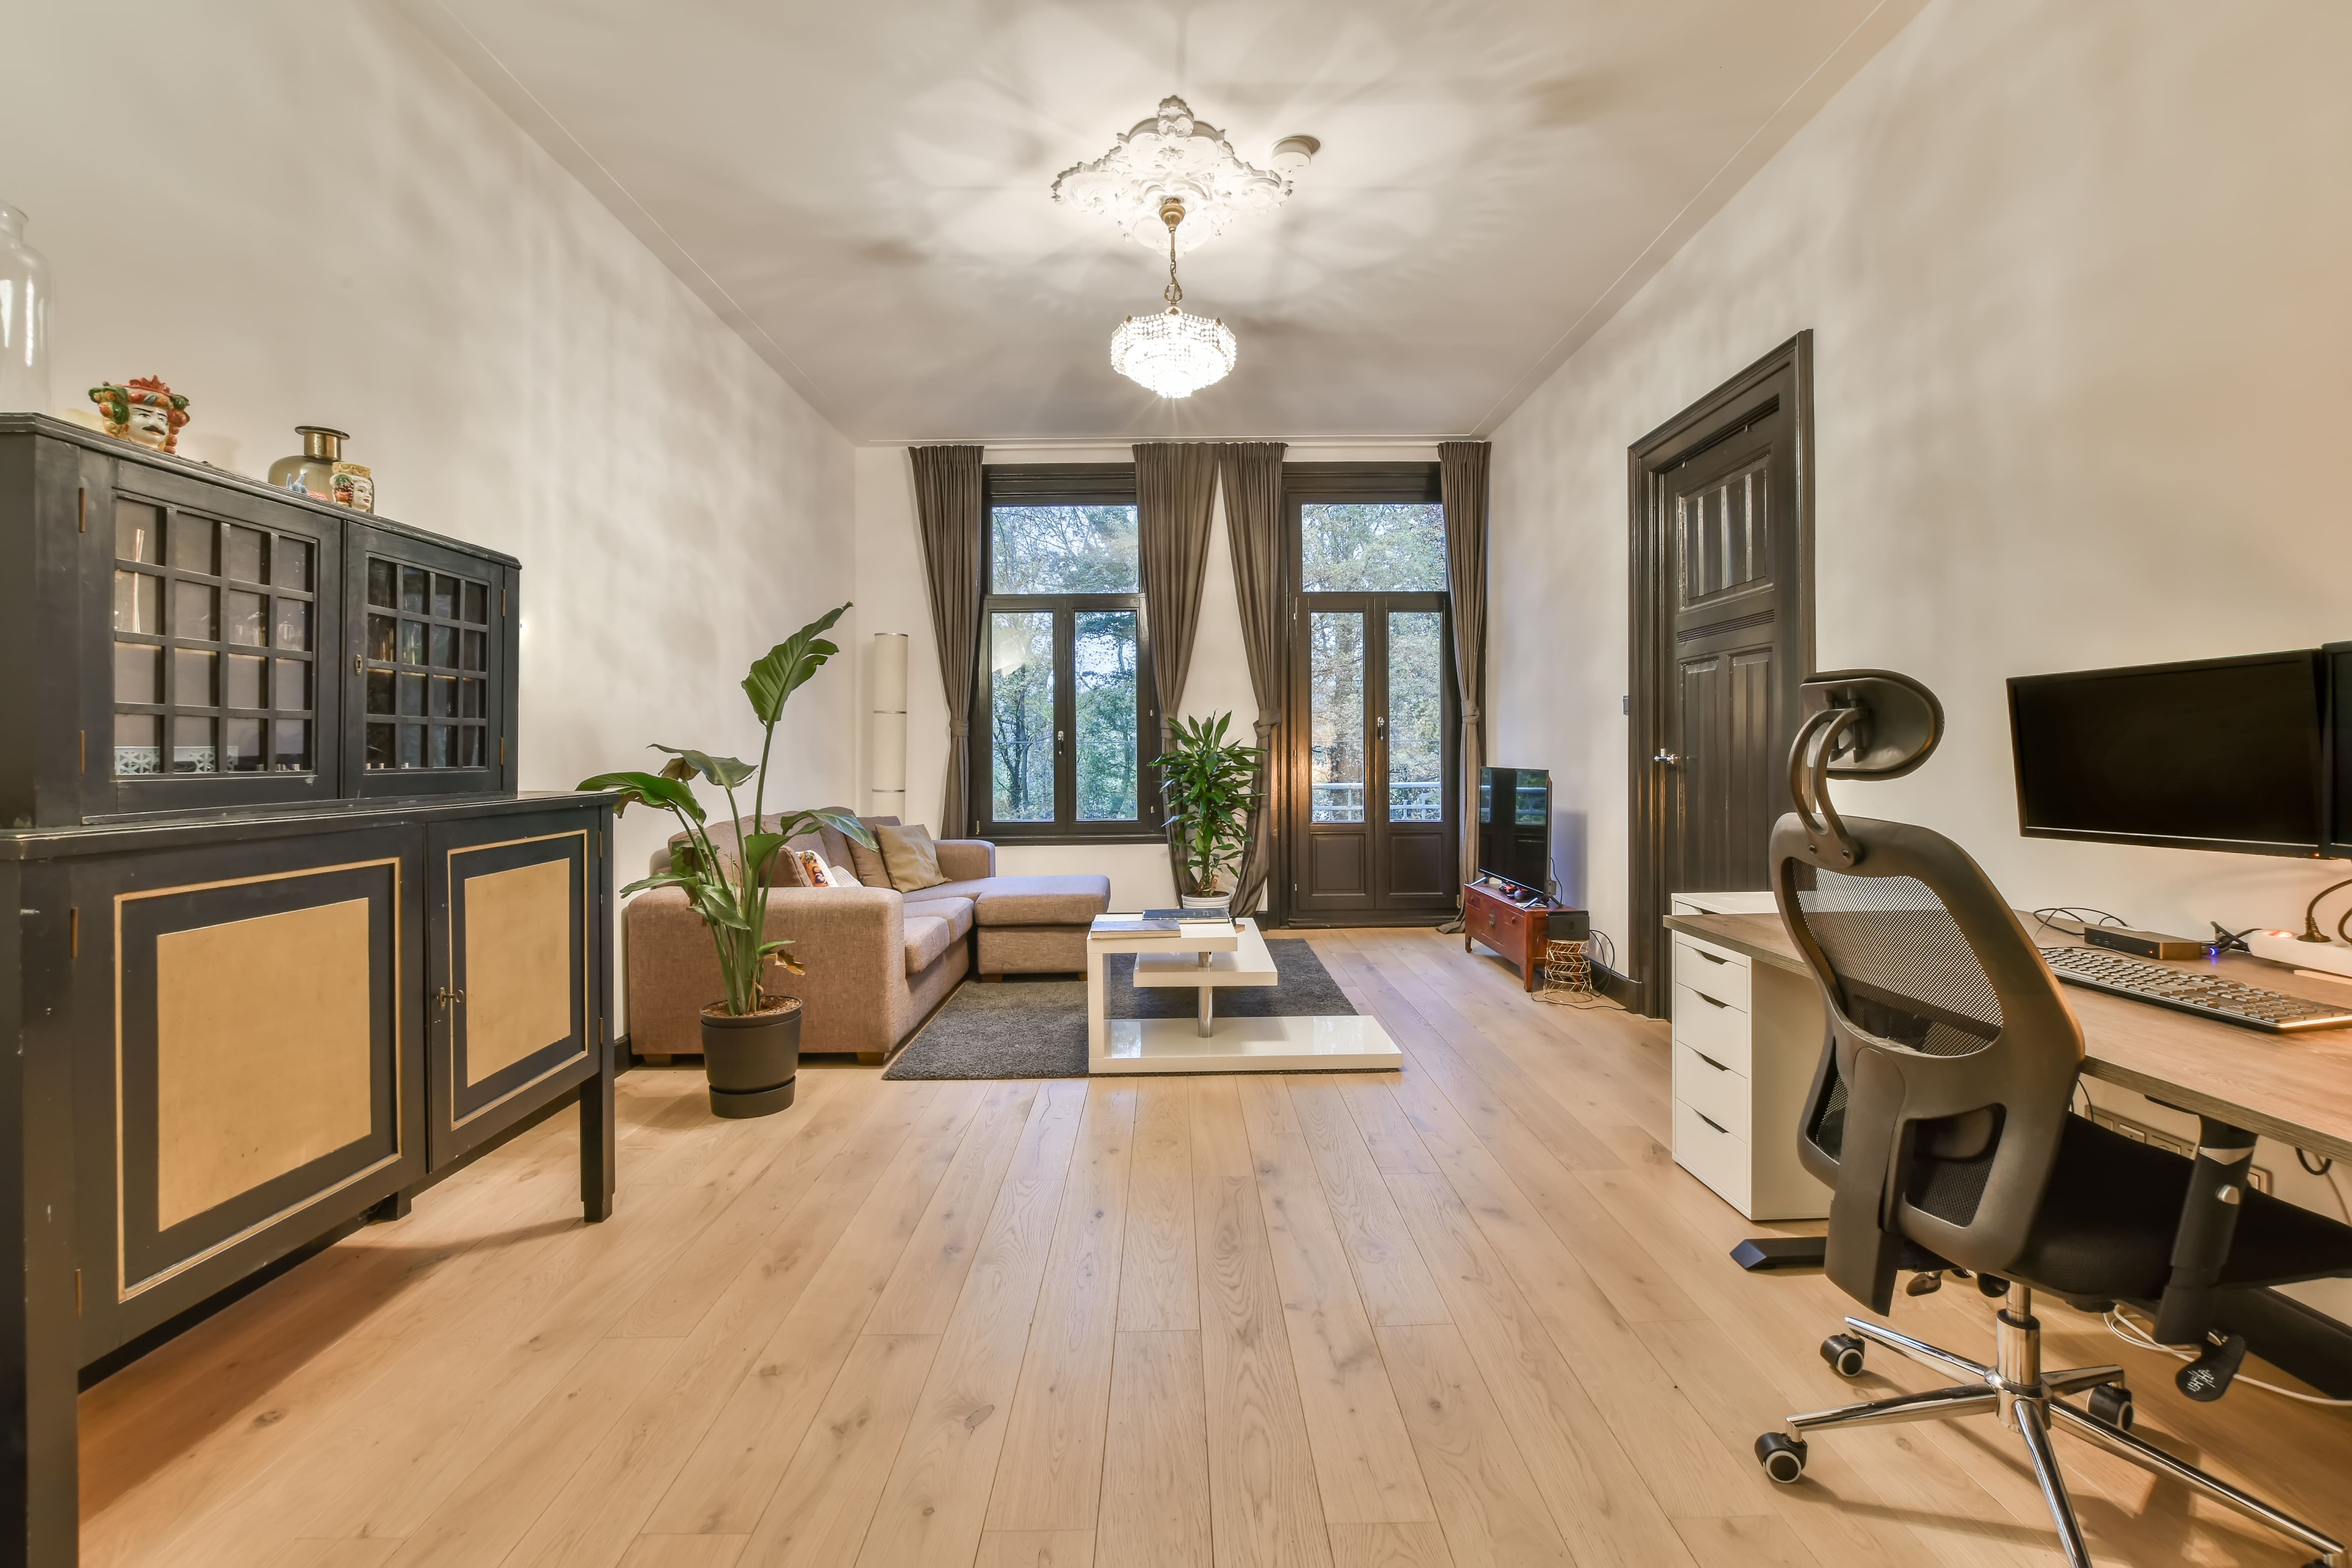 Apartamento limpo e organizado com chão de madeira e móveis em tons de marrom.